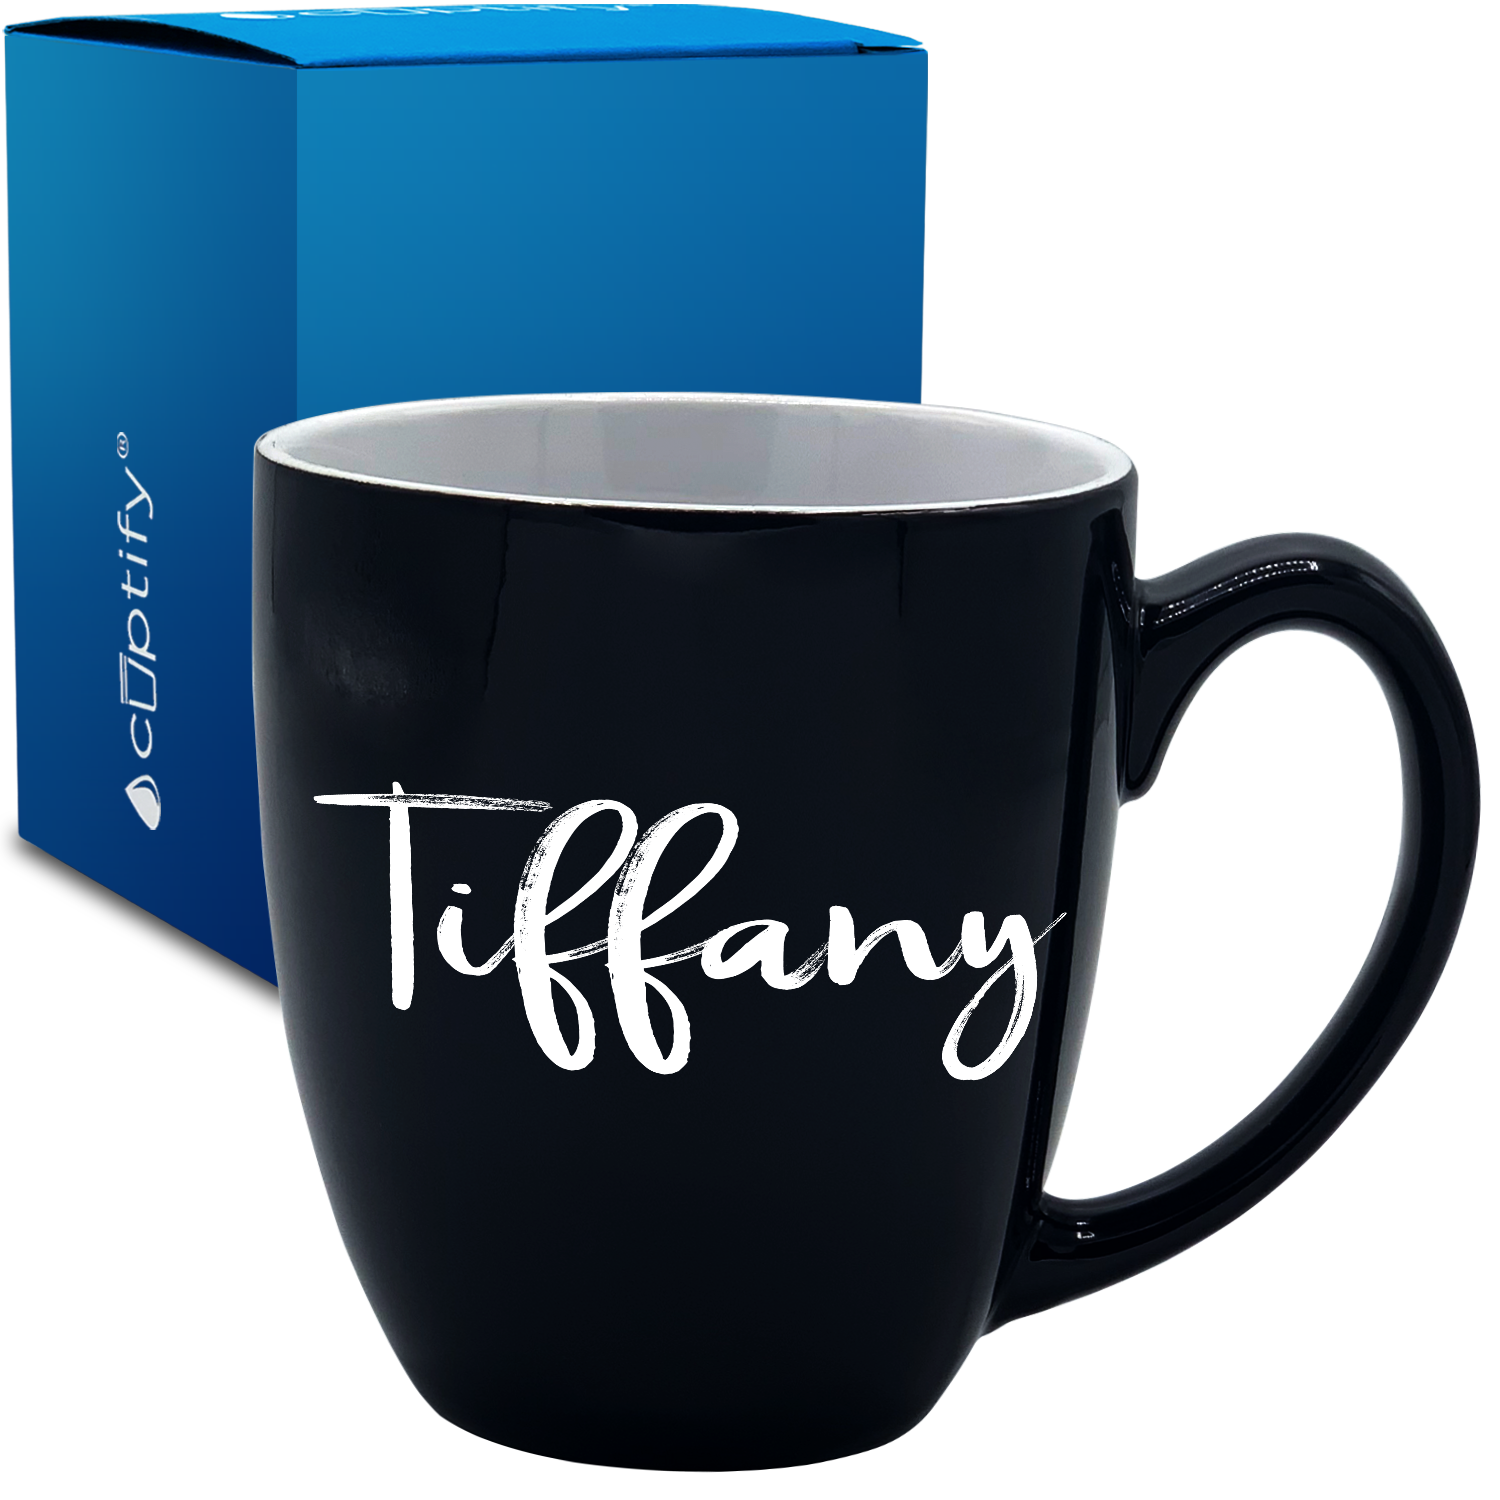 Personalized Tiffany Style 16oz Bistro Coffee Mug